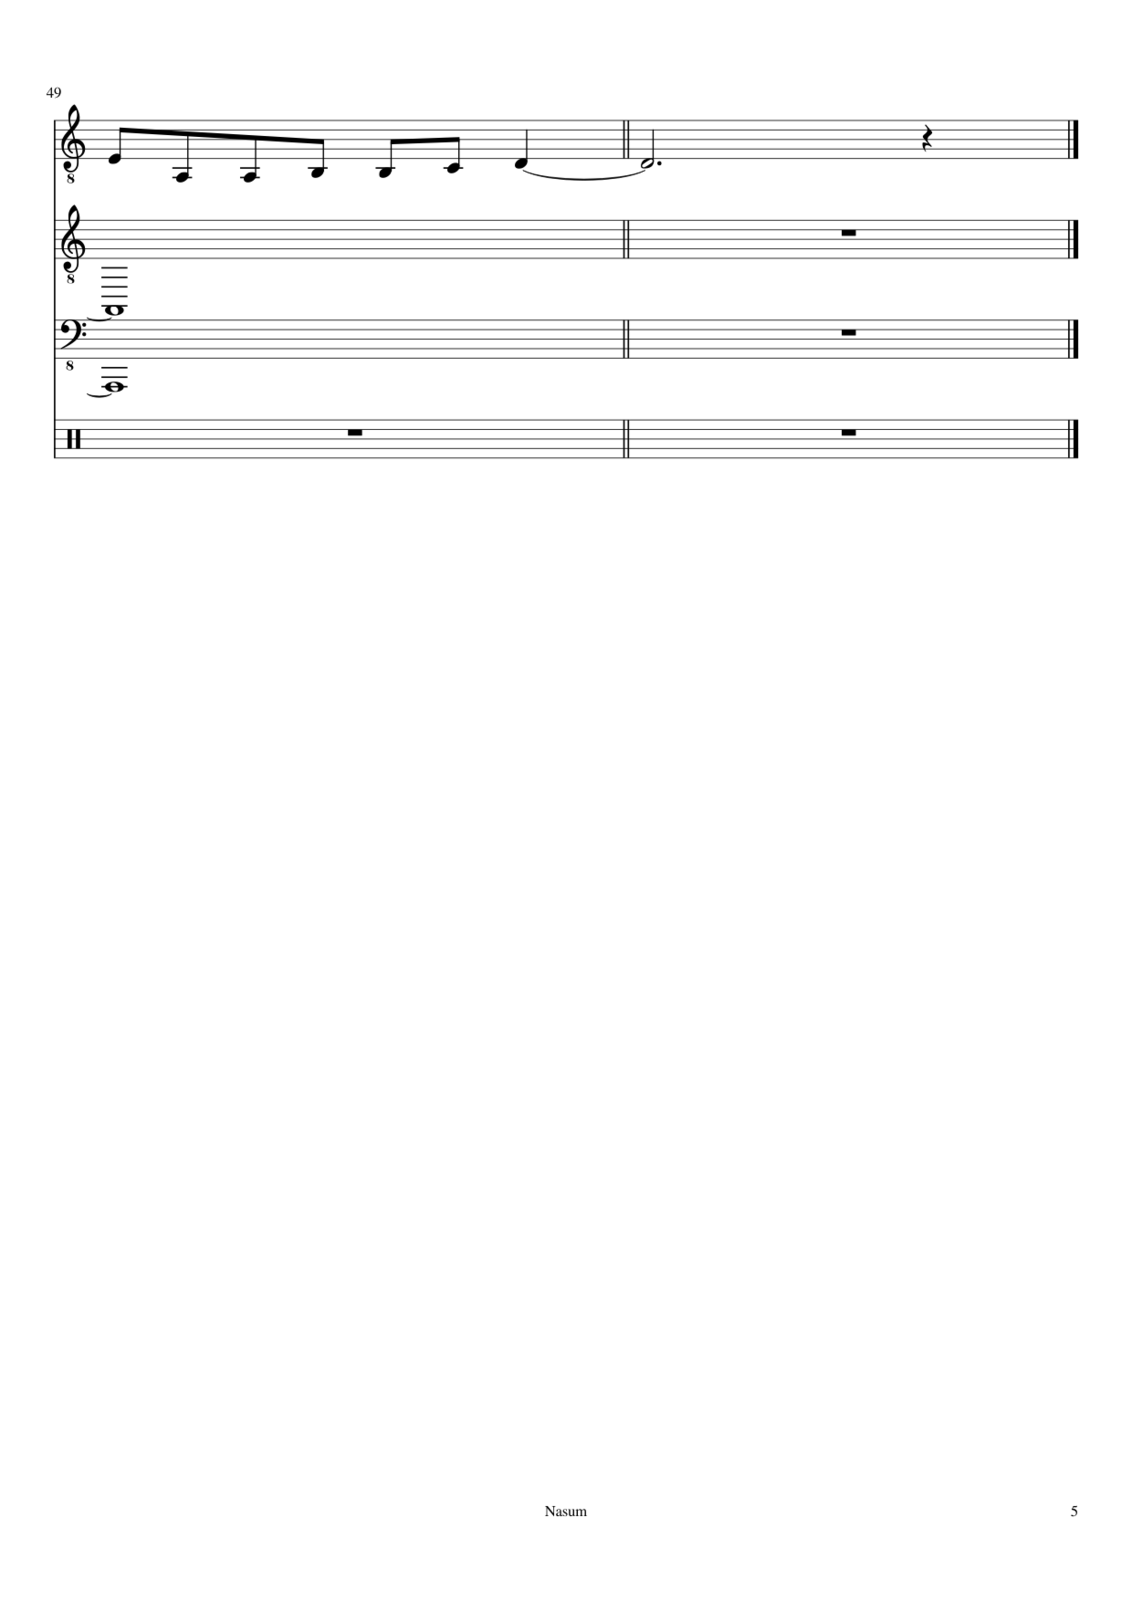 Zvezdnyiy vodoem slide, Image 16